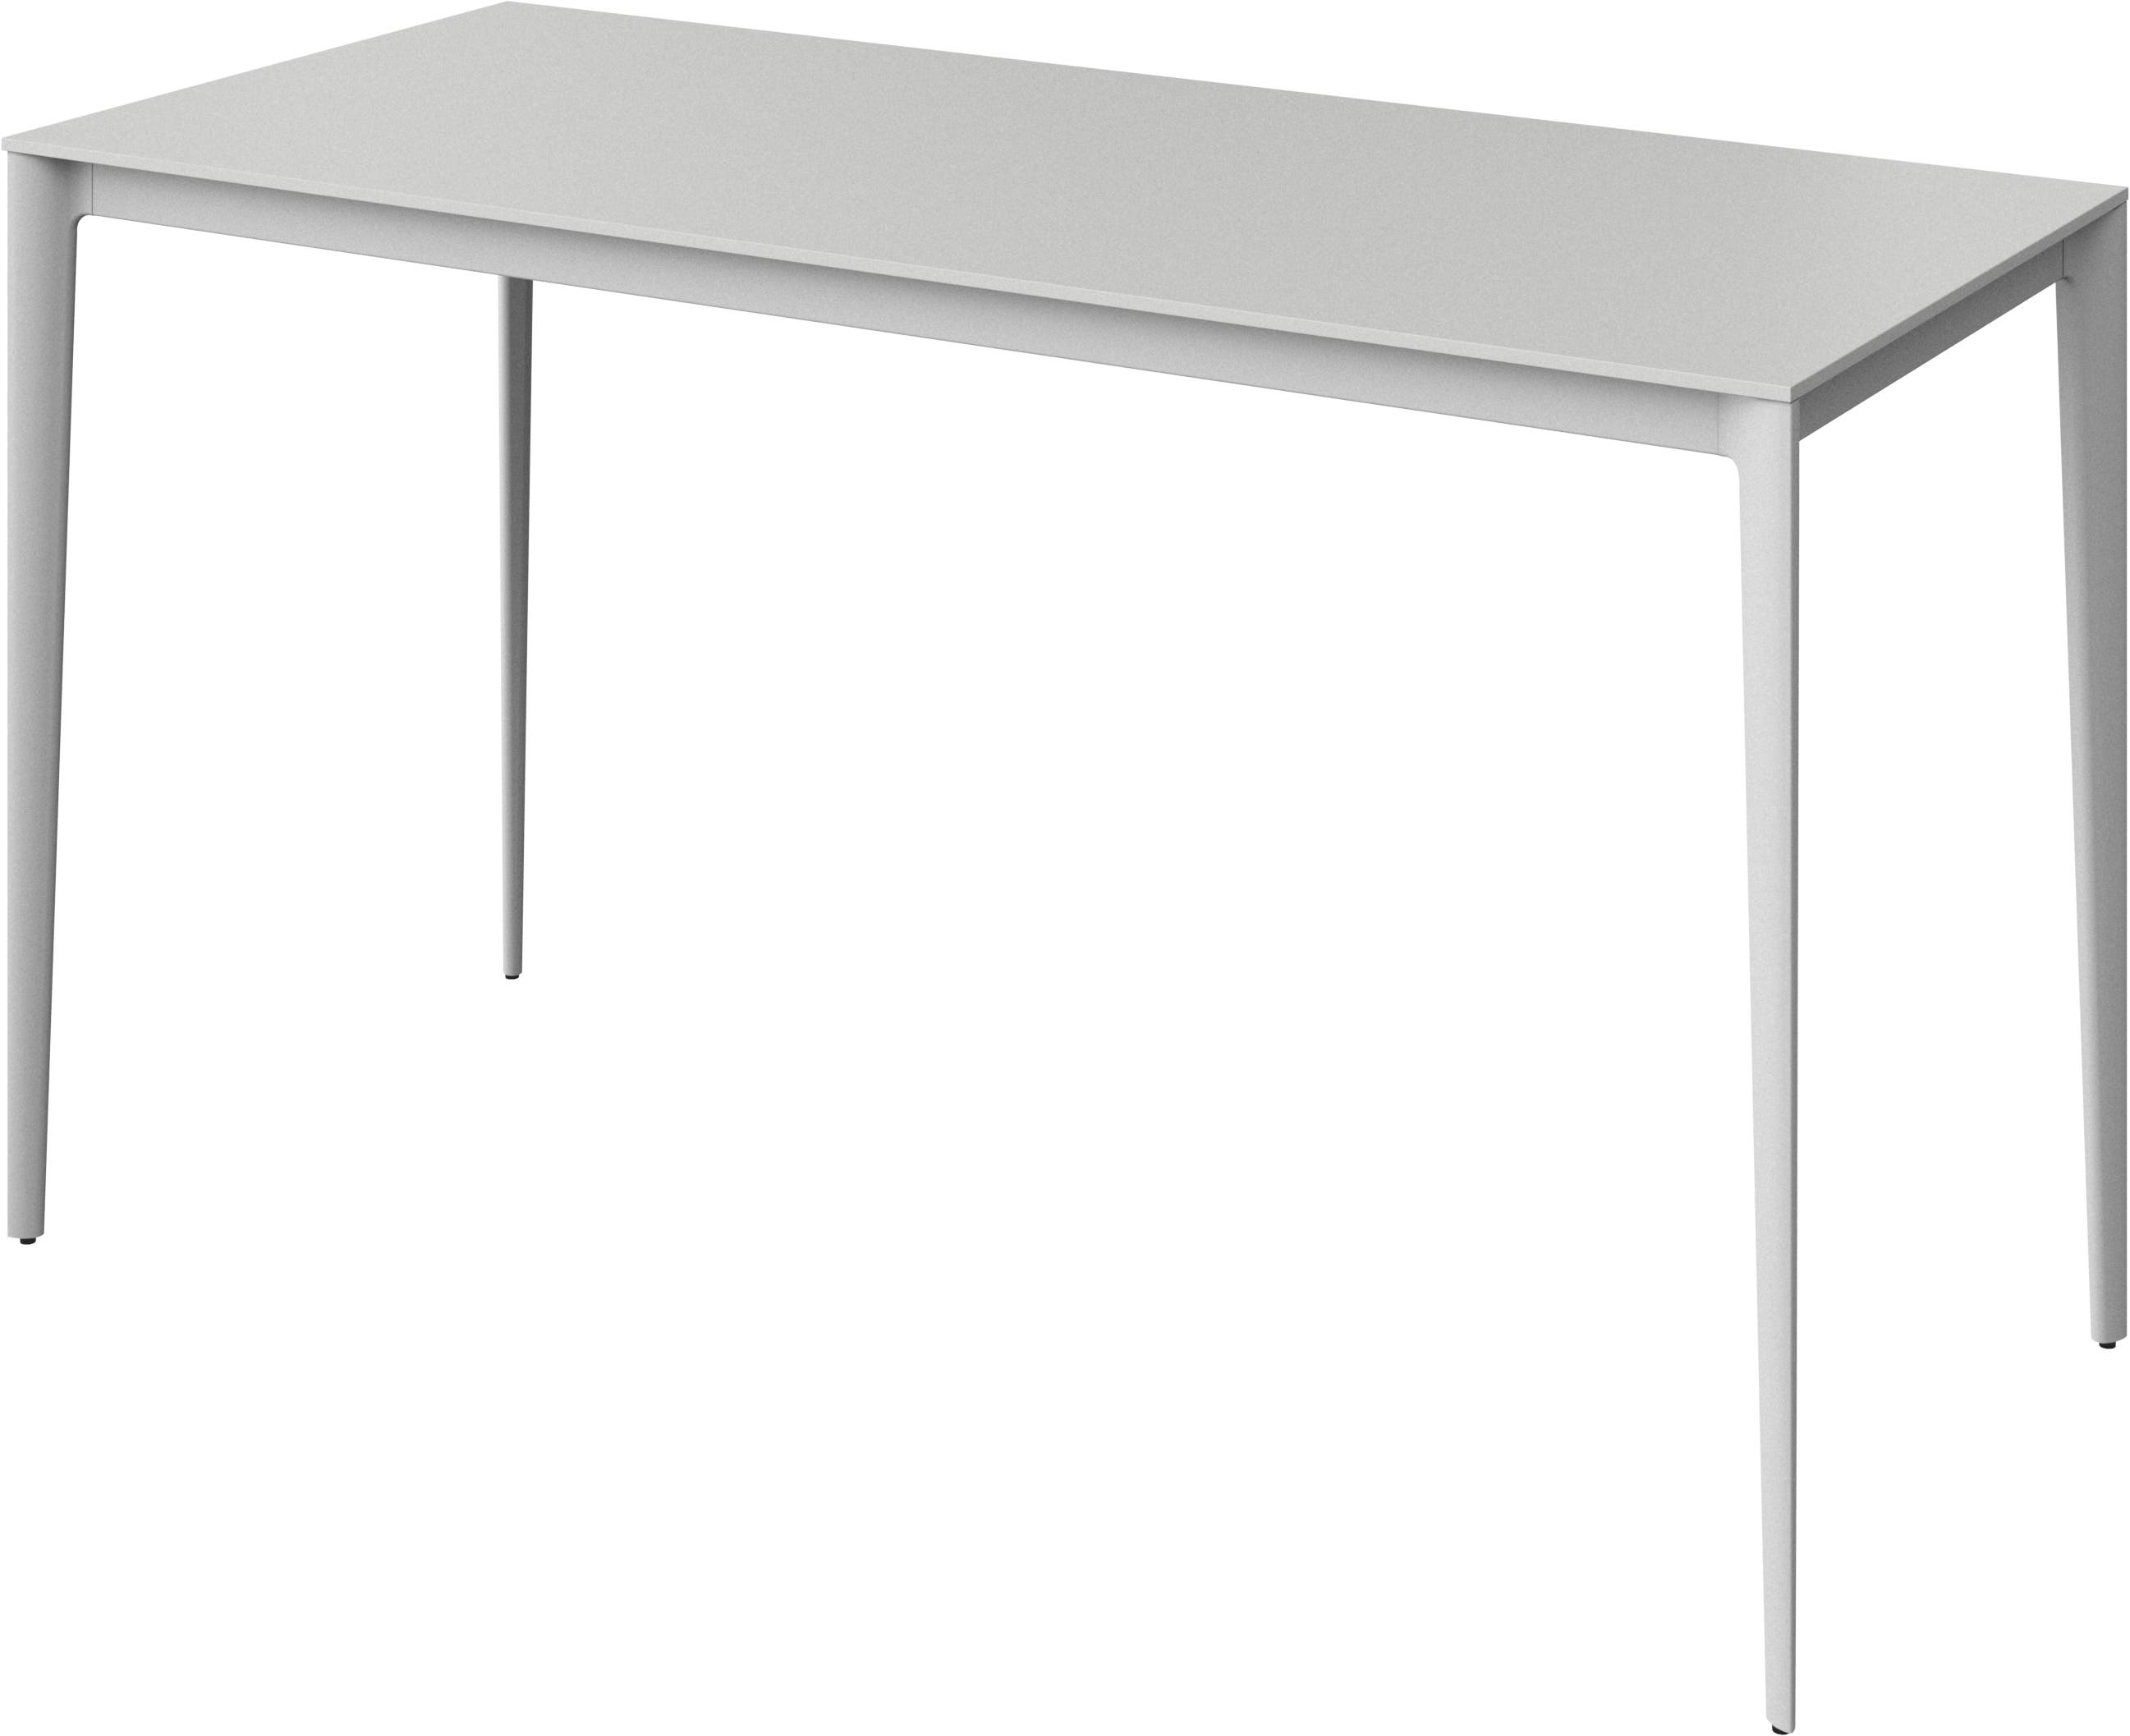 デザイナーバーテーブル | すべてのデザインはこちら | ボーコンセプト